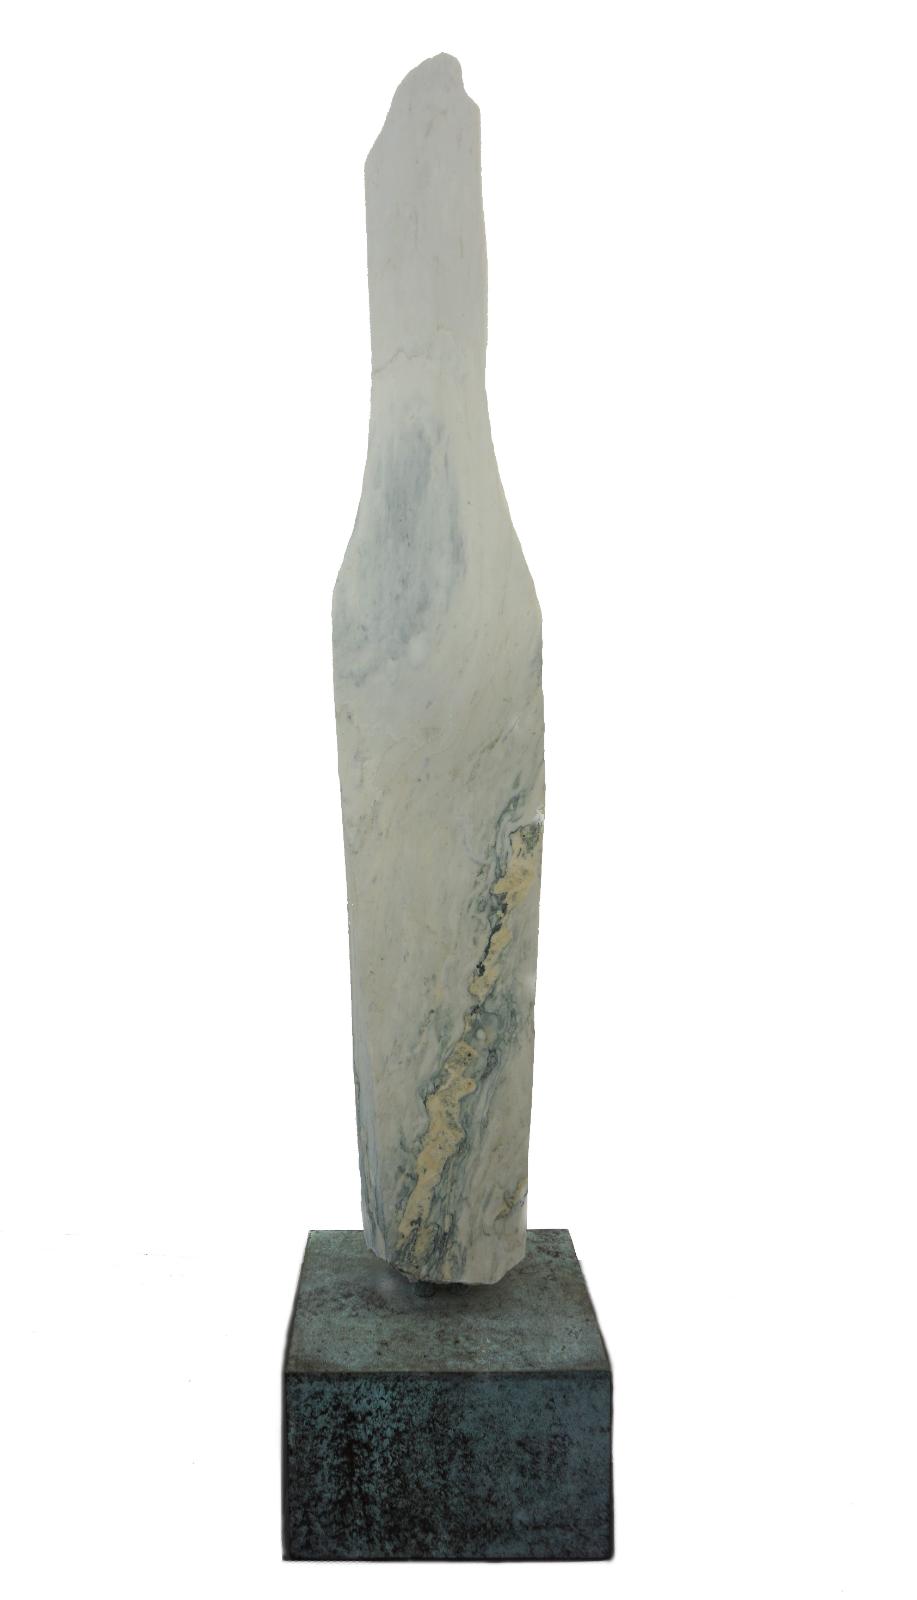 Rudolf Kurz, „Torso“, 2017, Marmor/Messing, 154 cm (Höhe), Preis auf Anfrage, kur003ko